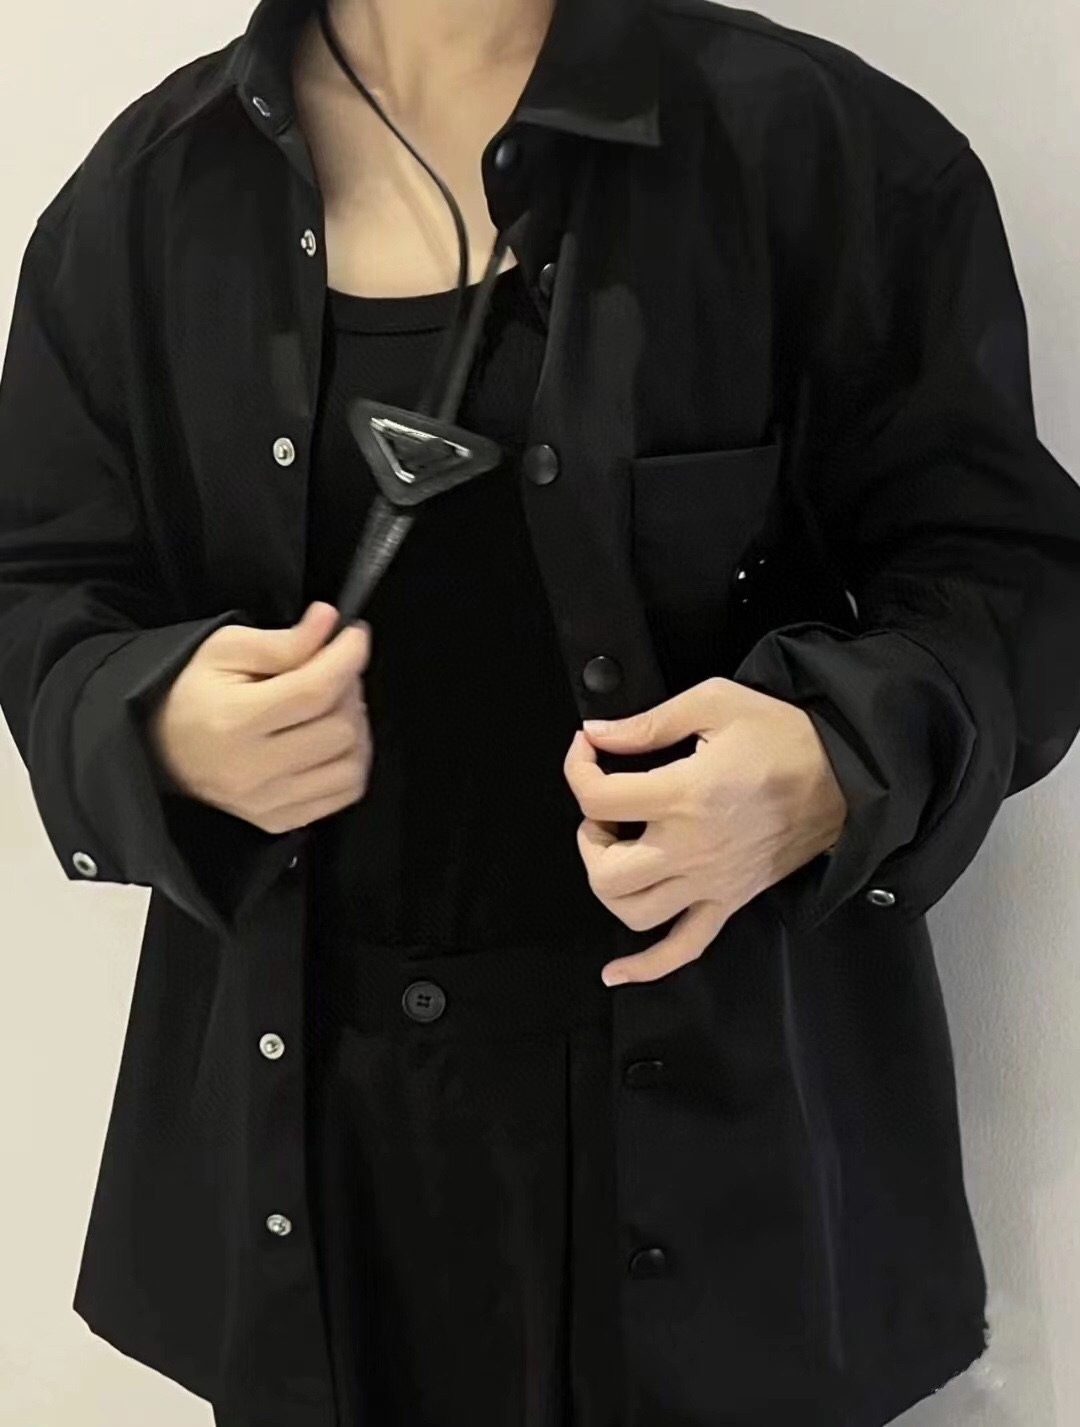 męski projektant czarnej koszuli metalowe logo nylon unisex swobodny wszechstronny koszulka z długim rękawem jesienna cienka kurtka